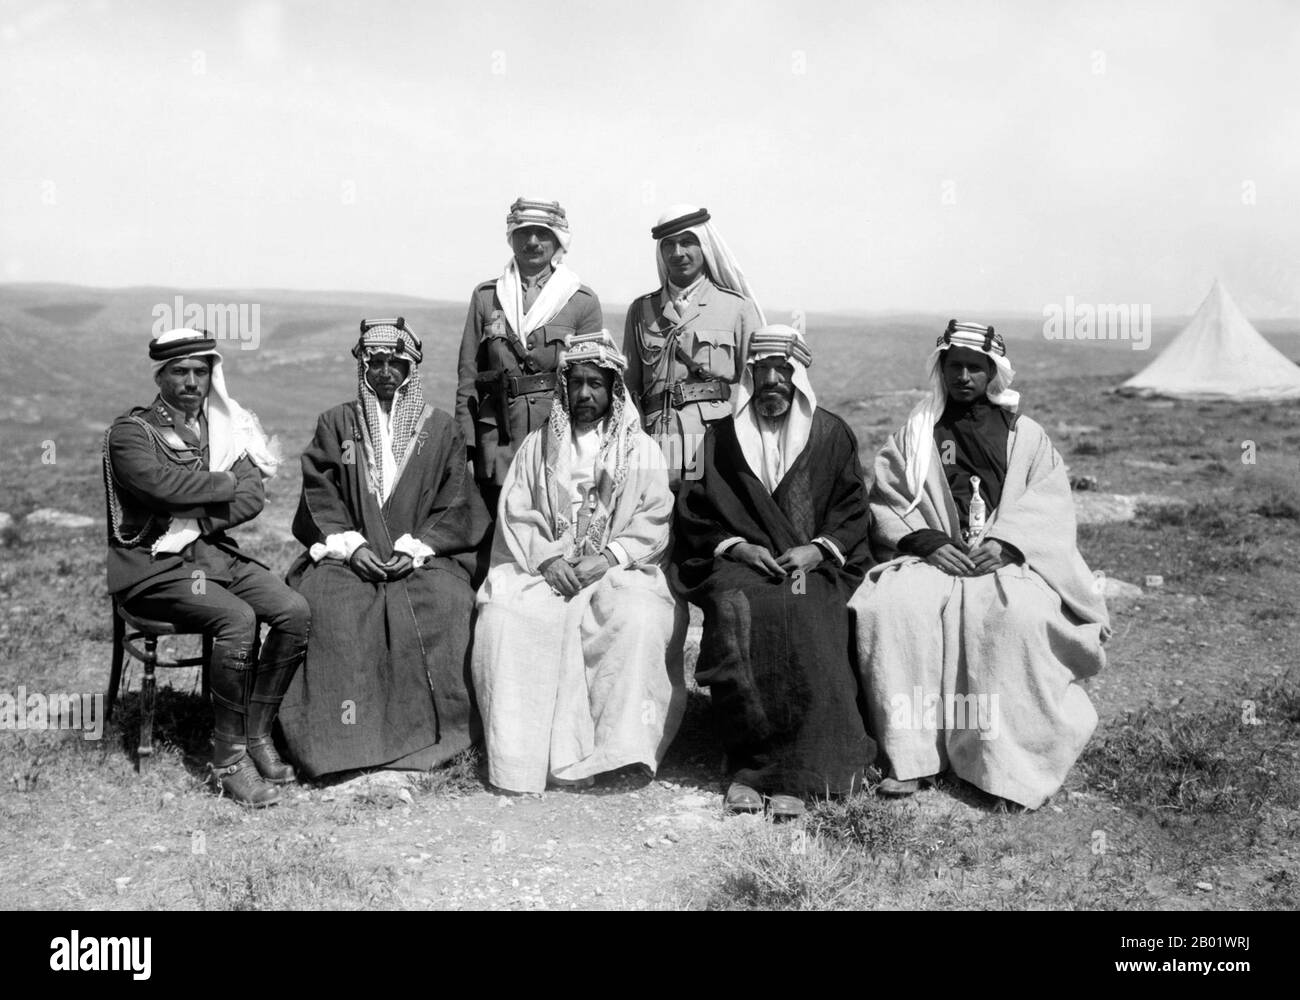 Jordanien: Emir Abdullah I. (Februar 1882 bis 20. Juli 1951), König von Jordanien (R. 1921-1946), Zentrum, mit Emir Shakir rechts, April 1921. Abdullah I. bin al-Hussein (Abd Allāh ibn al-Husayn), König von Jordanien, war der zweite von drei Söhnen von Sherif Hussein bin Ali, Sharif und Emir von Mekka. Er wurde in Istanbul, der Türkei und Hijaz ausgebildet. Von 1909 bis 1914 saß Abdullah in der osmanischen Legislaturperiode als Abgeordneter für Mekka, verbündete sich aber während des Ersten Weltkriegs mit Großbritannien Zwischen 1916 und 1918 spielte er in Zusammenarbeit mit dem britischen Guerillaführer T. E. Lawrence eine Schlüsselrolle bei der Planung der Großen Arabischen Revolte. Stockfoto